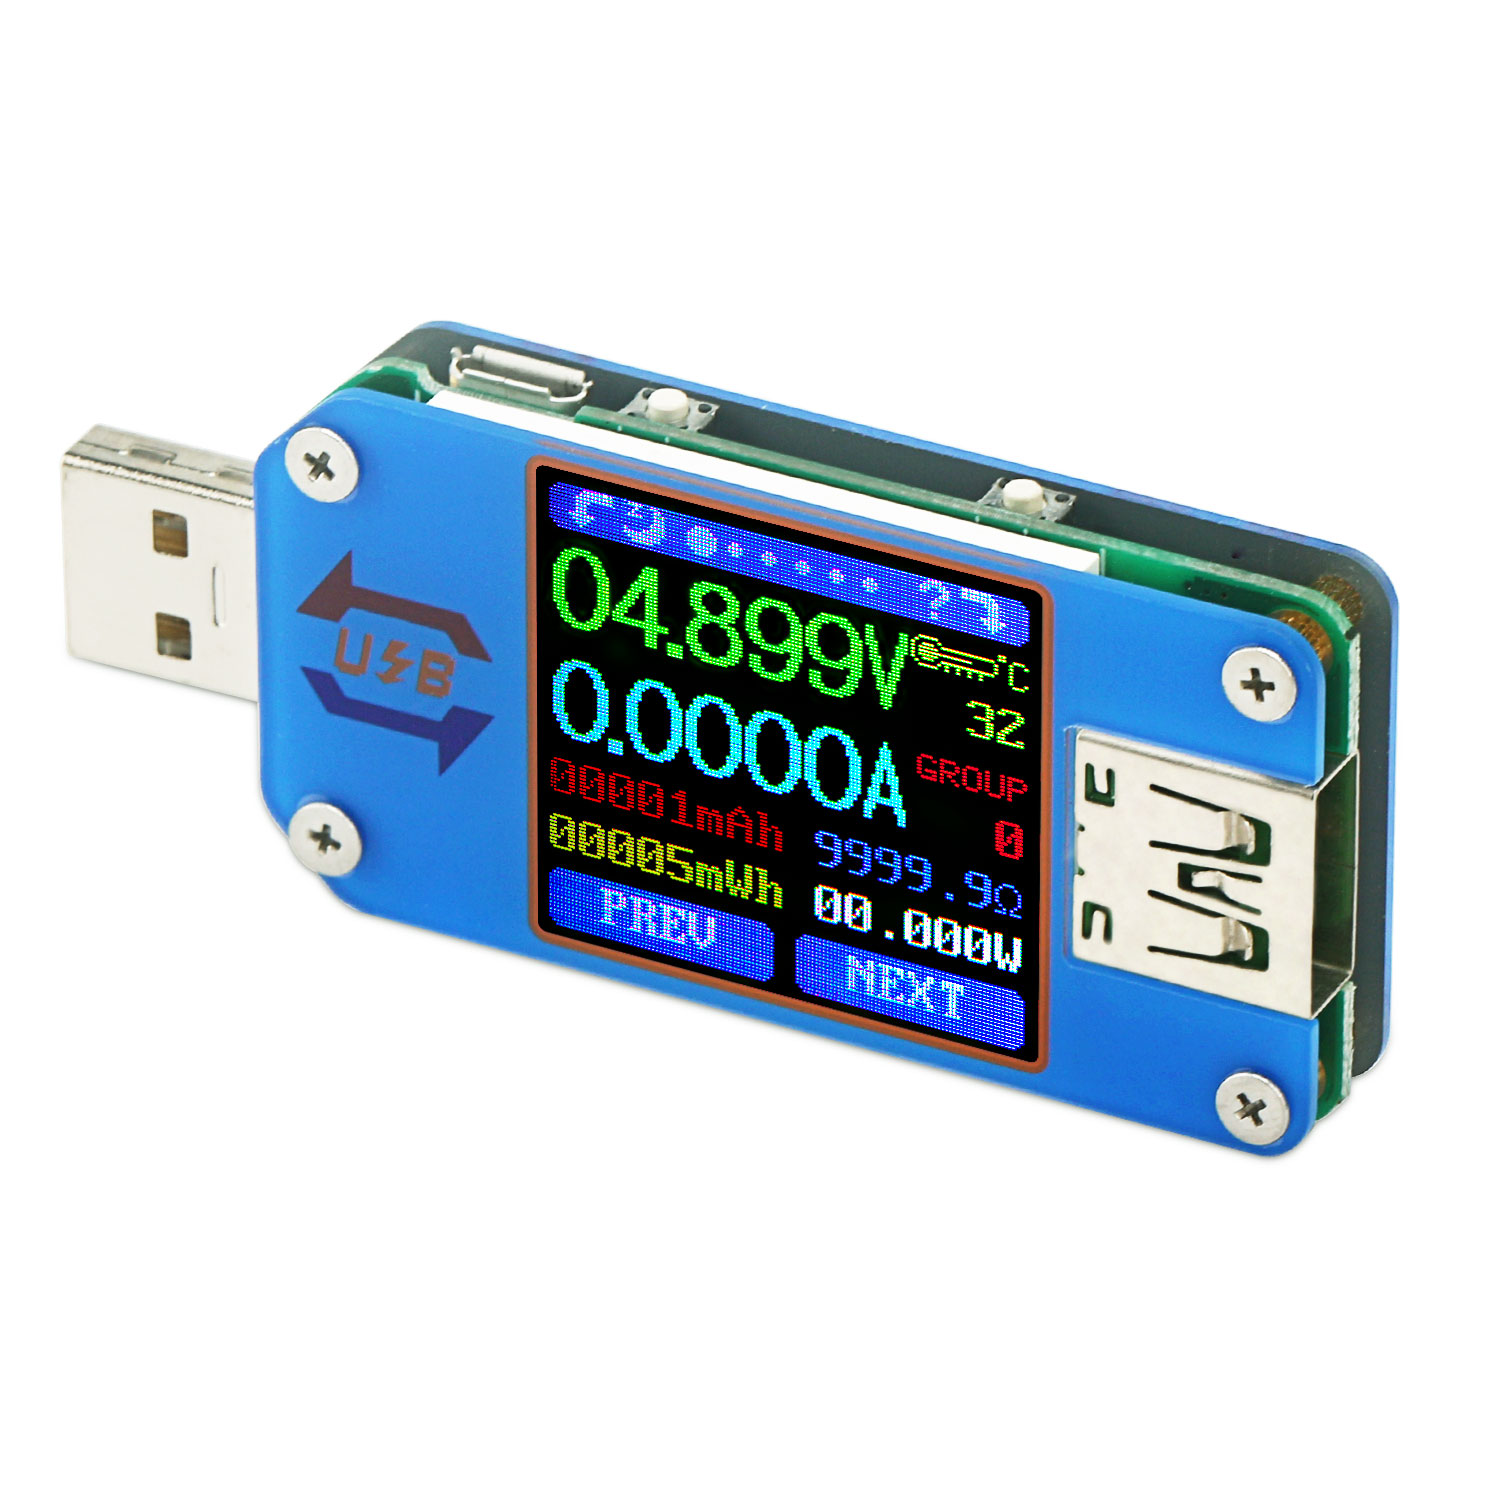 Festnight RD UM25/UM25C USB 2.0 Type C Color LCD Display Tester Voltage Current Meter Voltmeter Ammeter Battery Charge Cable Impedance Resistance Measurement Communication Version 